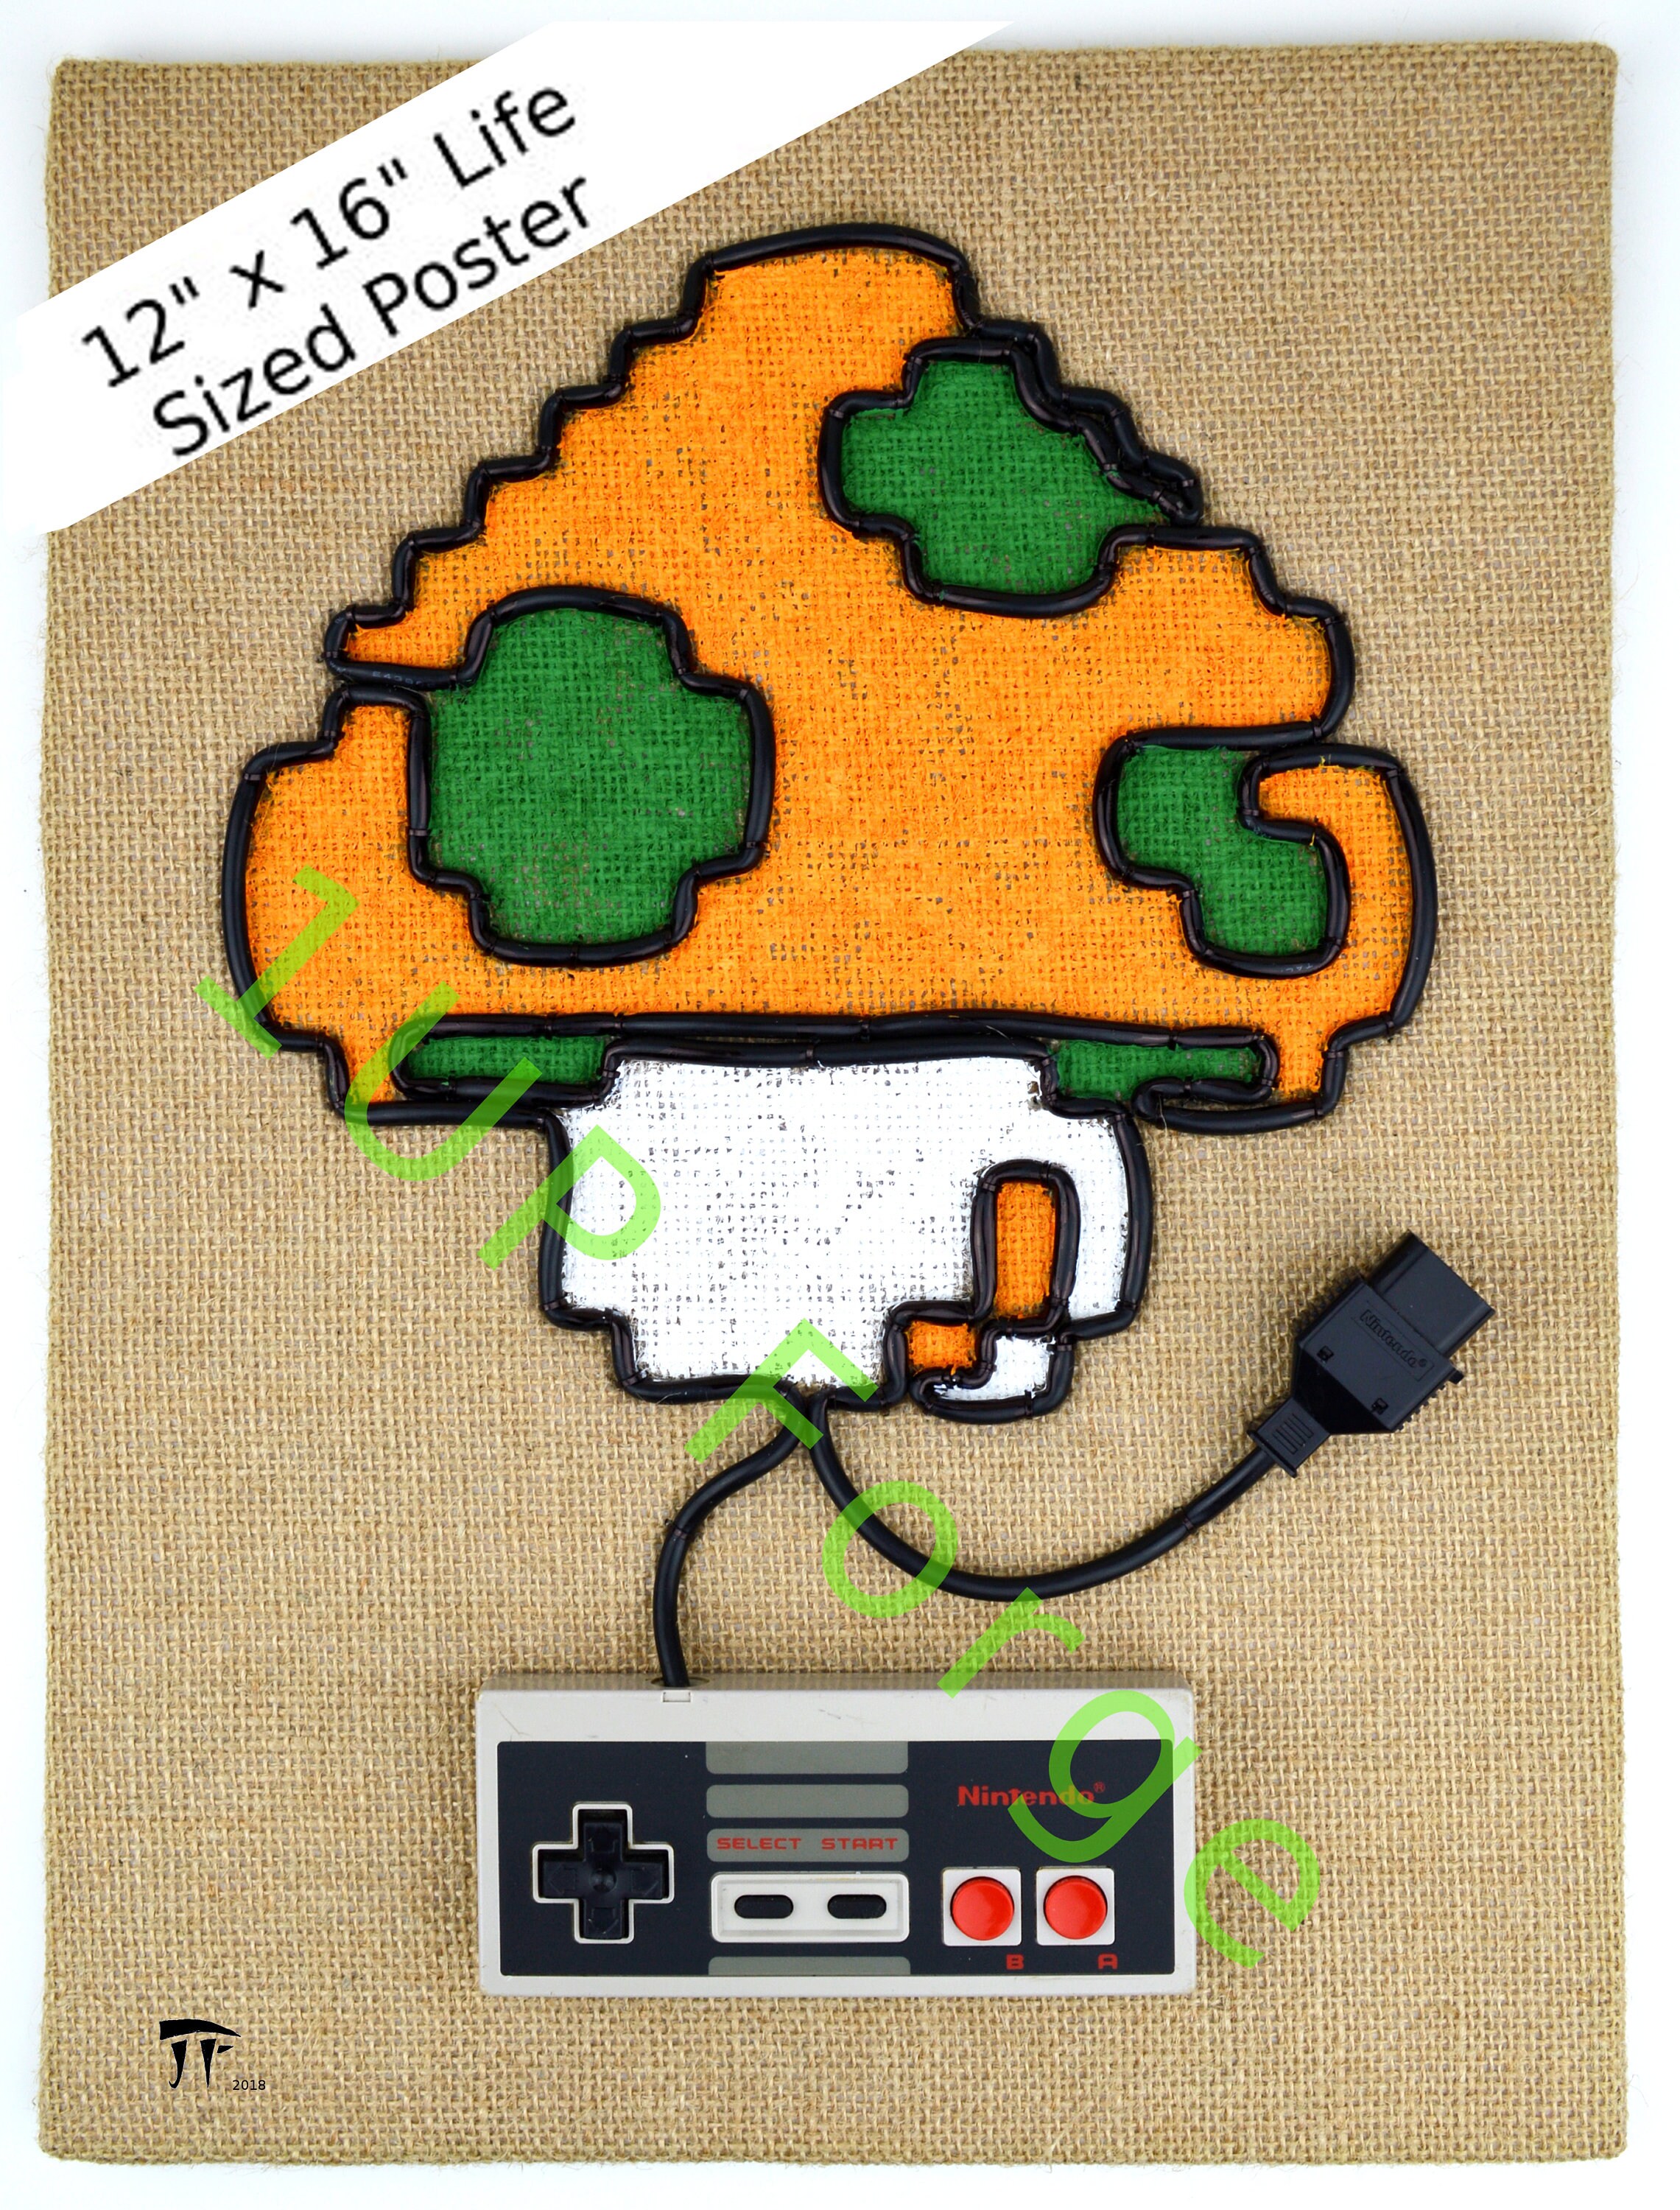 Super Mario 1UP Mushroom Poster Print Nintendo Art Print - Etsy